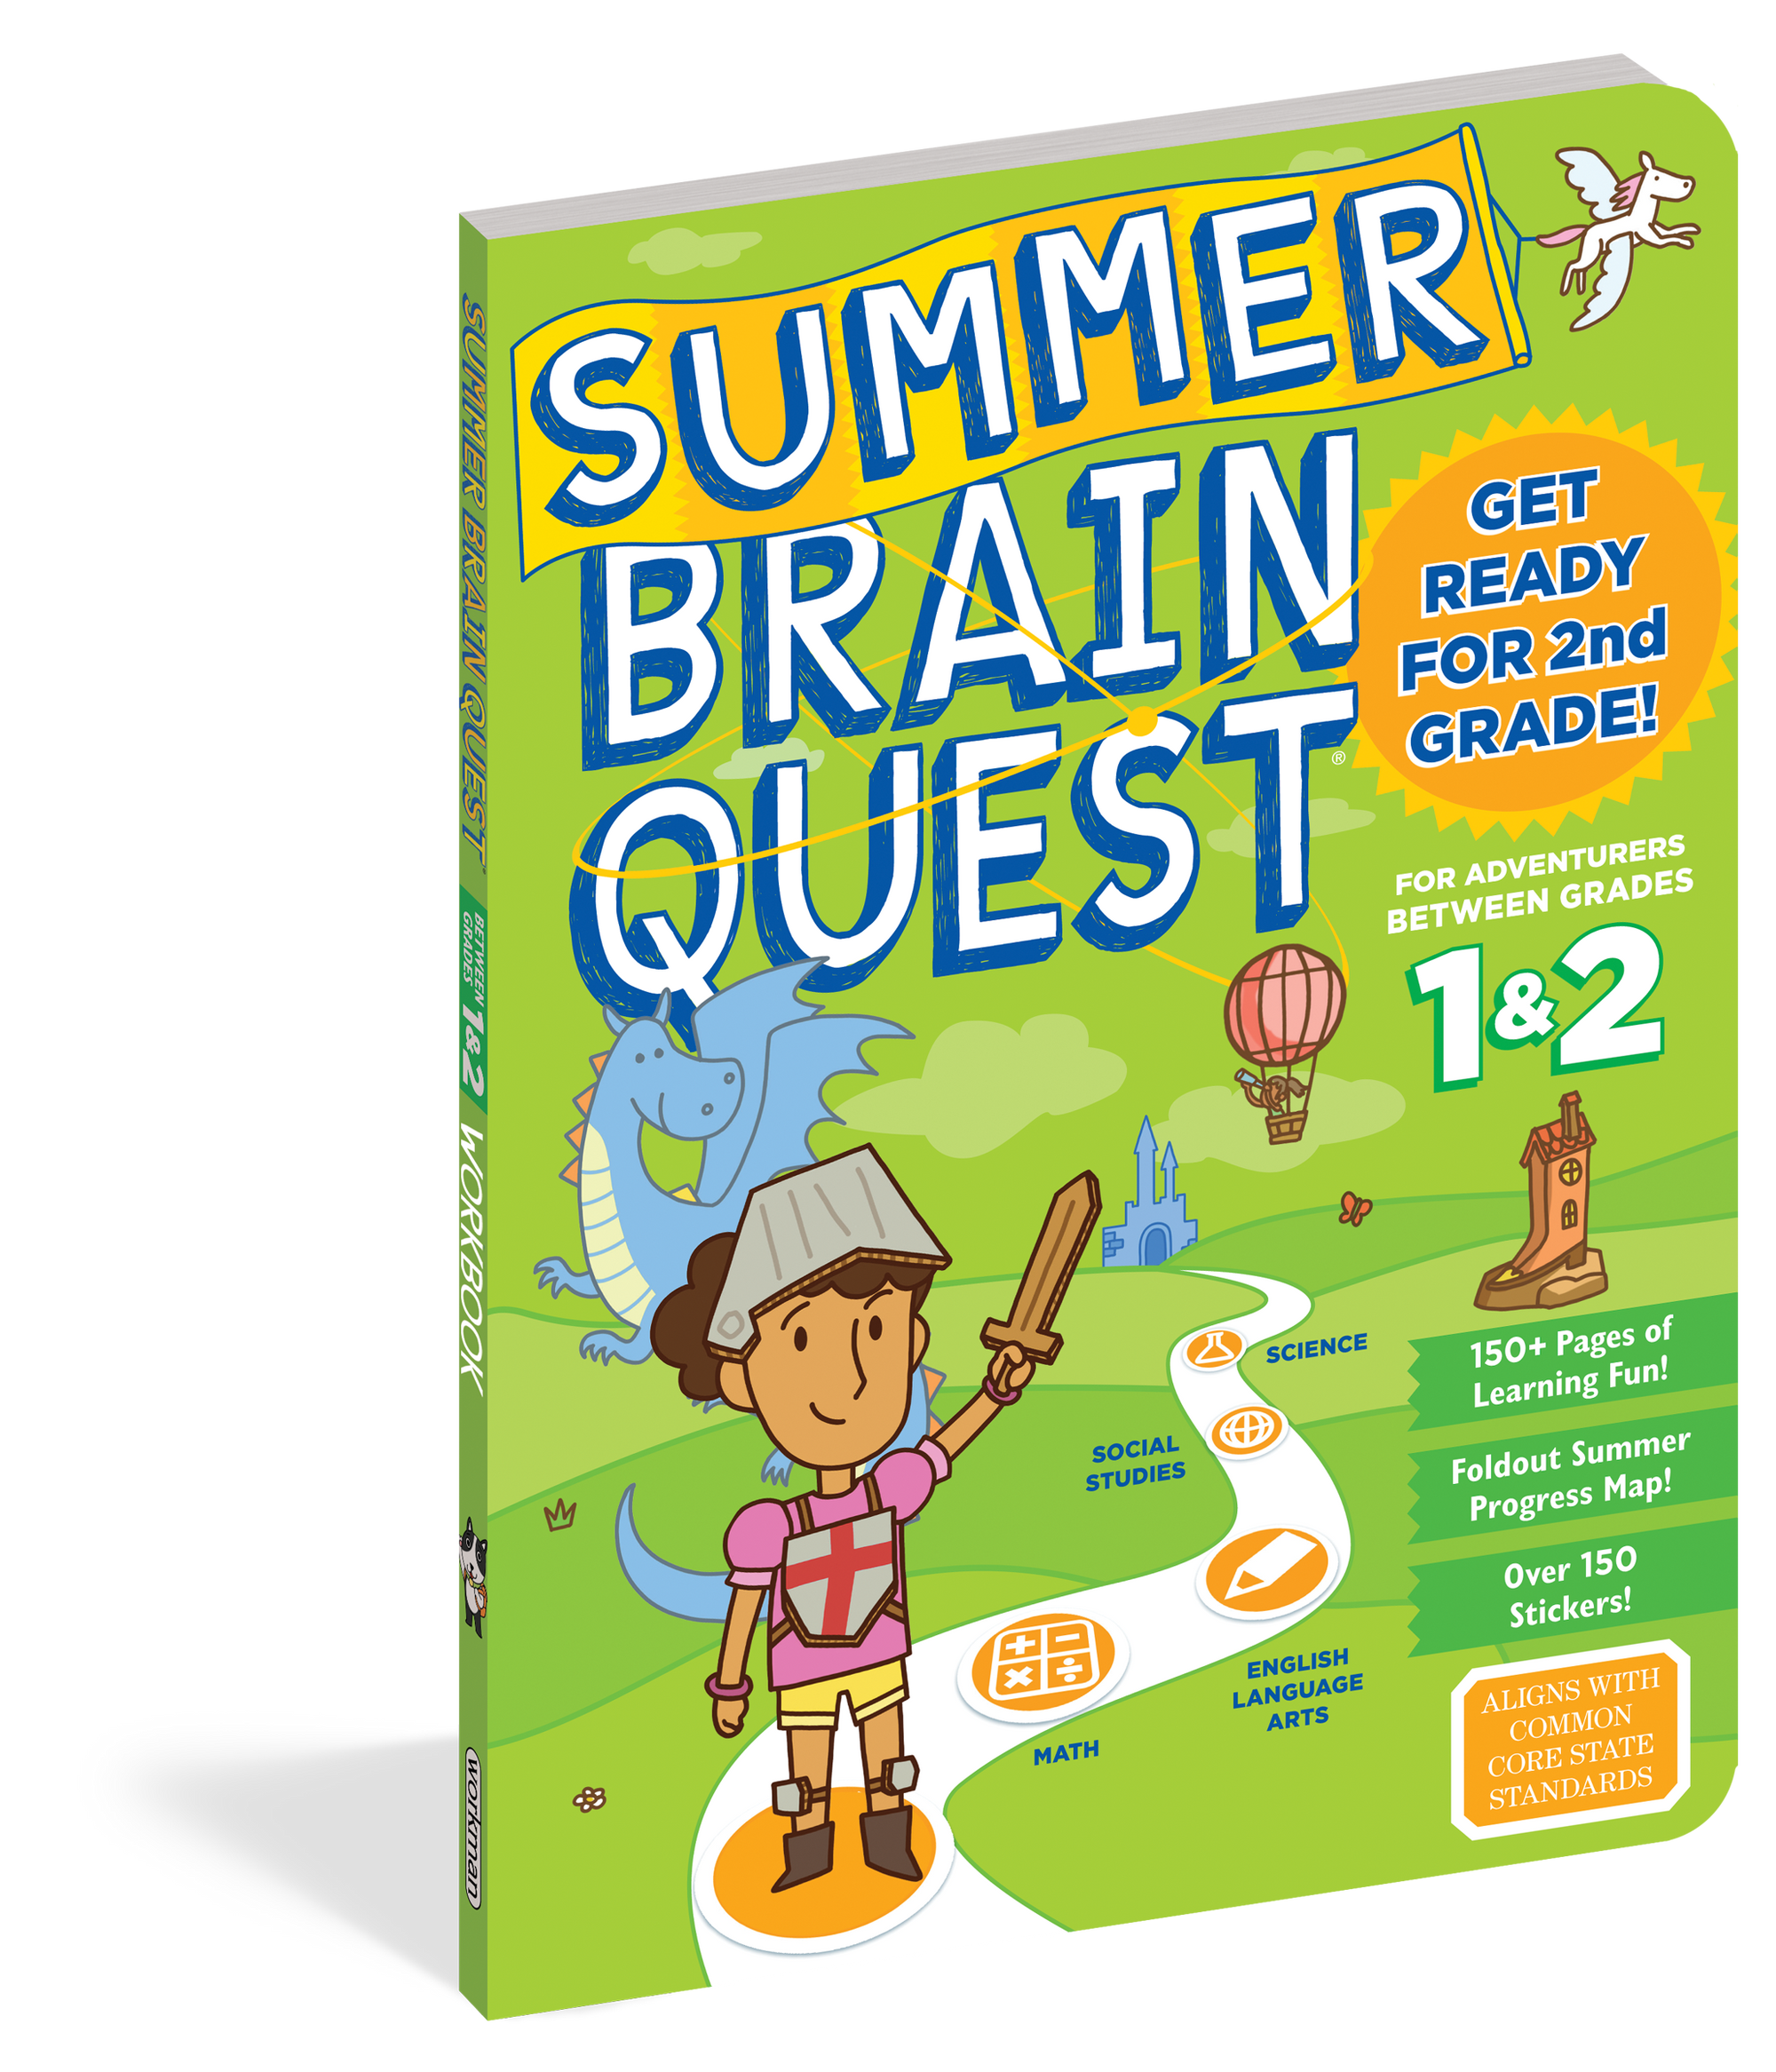 Brain Quest Summer Brain Quest: Between Grades 1 & 2